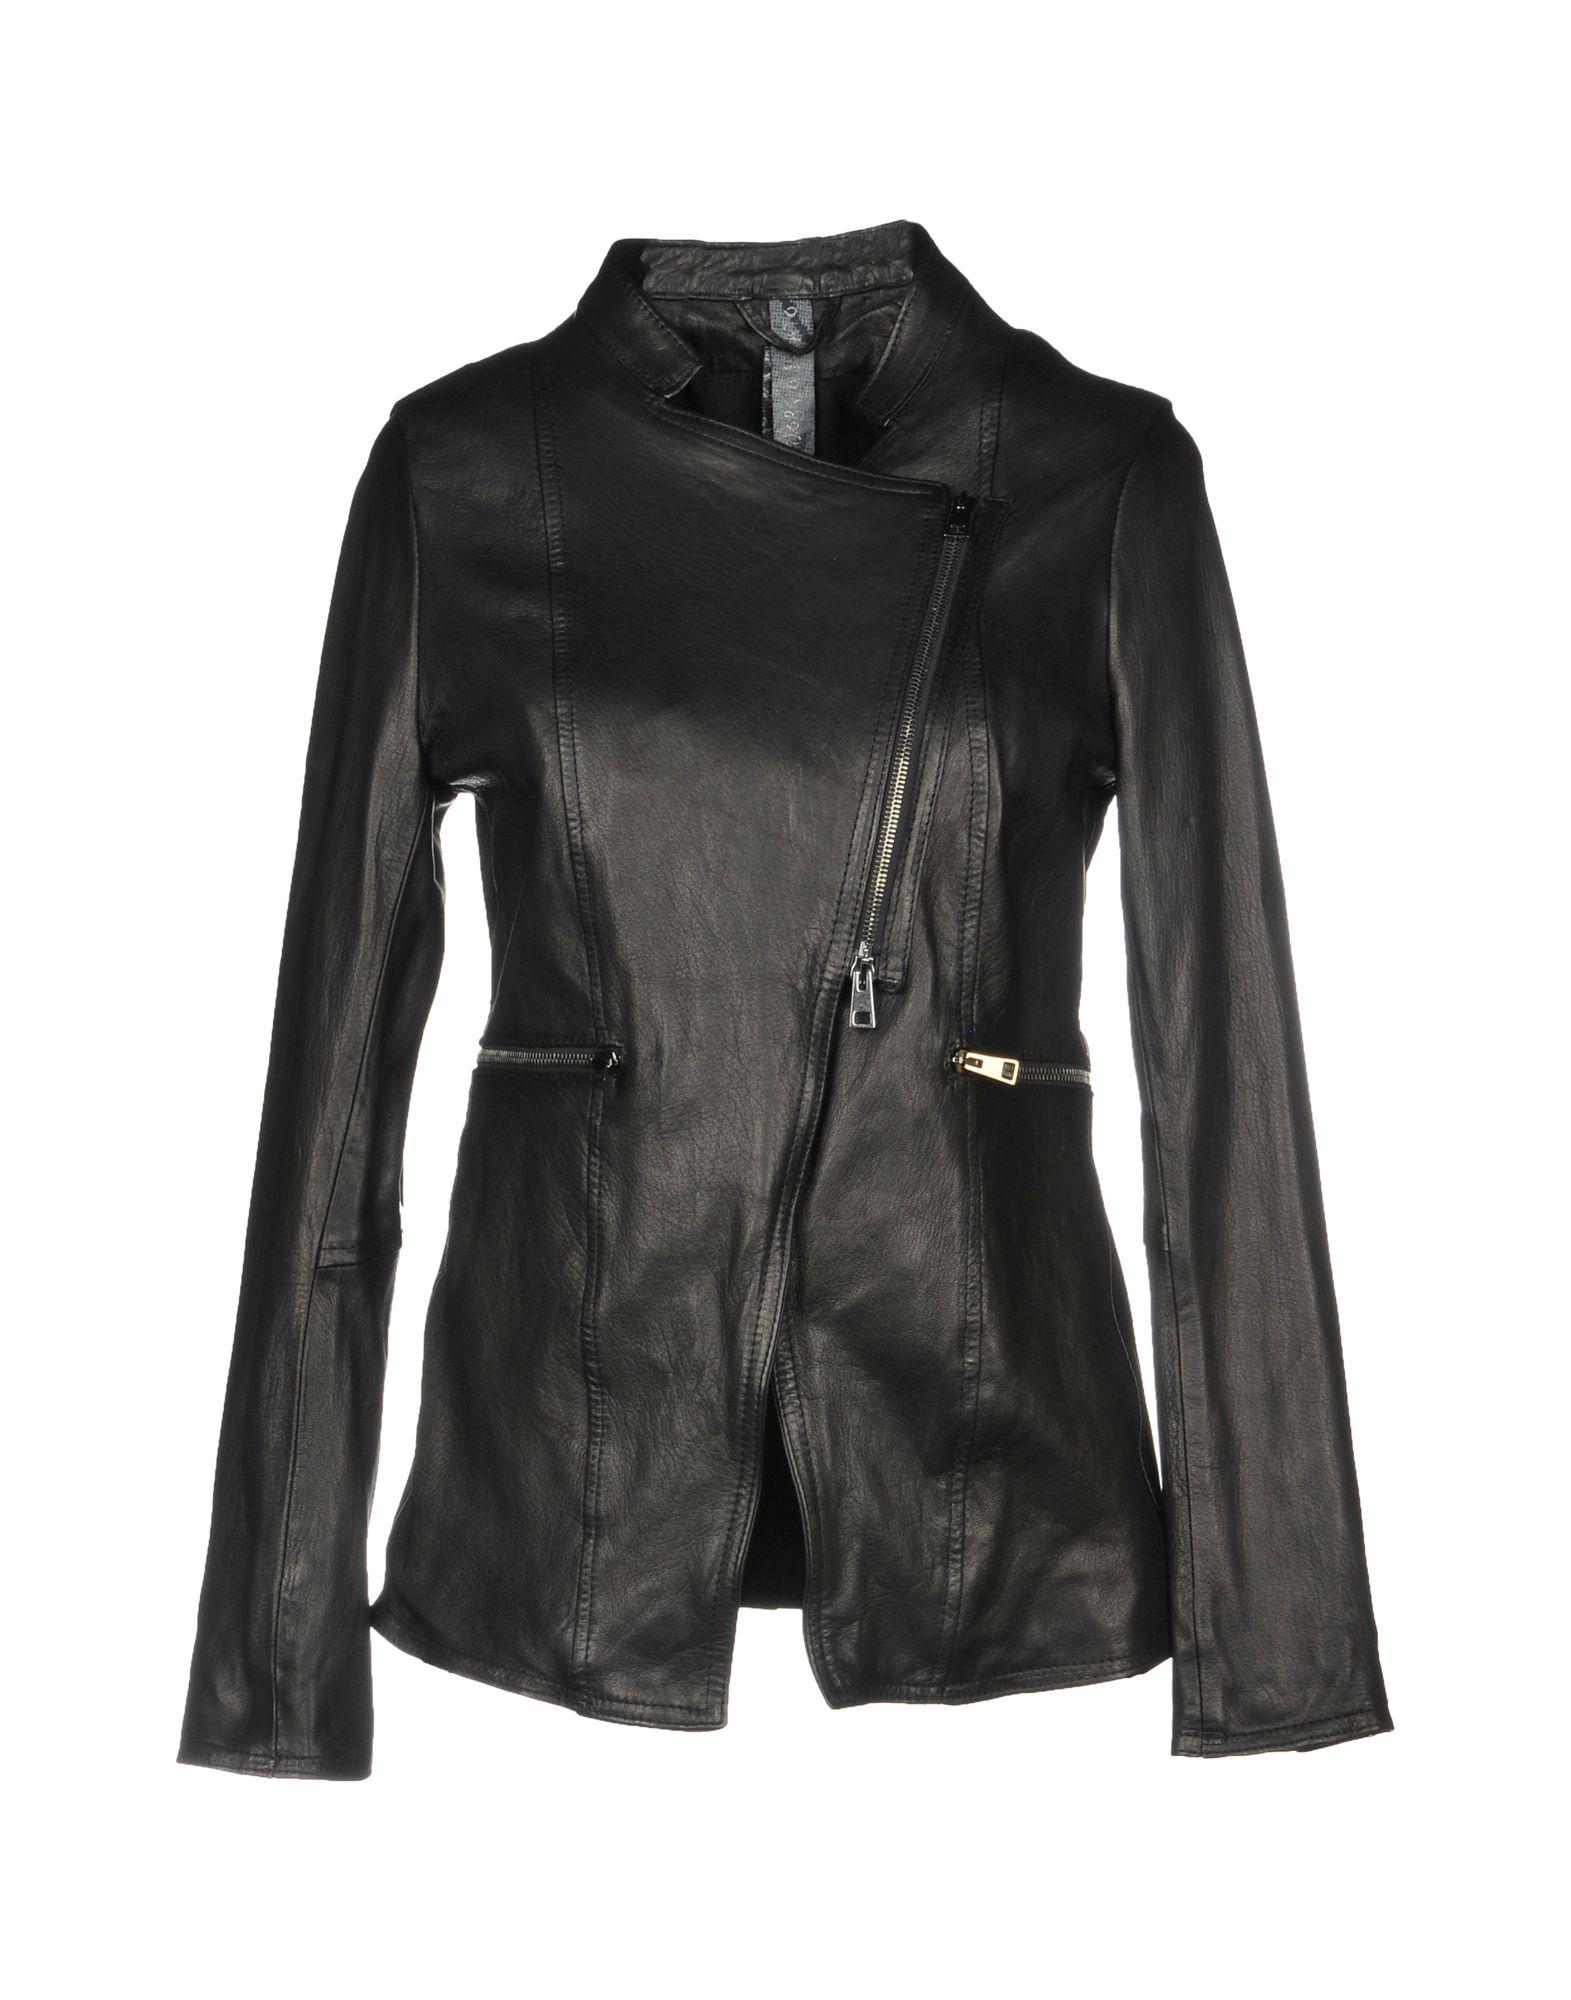 Giorgio Brato Leather Jacket in Black - Lyst